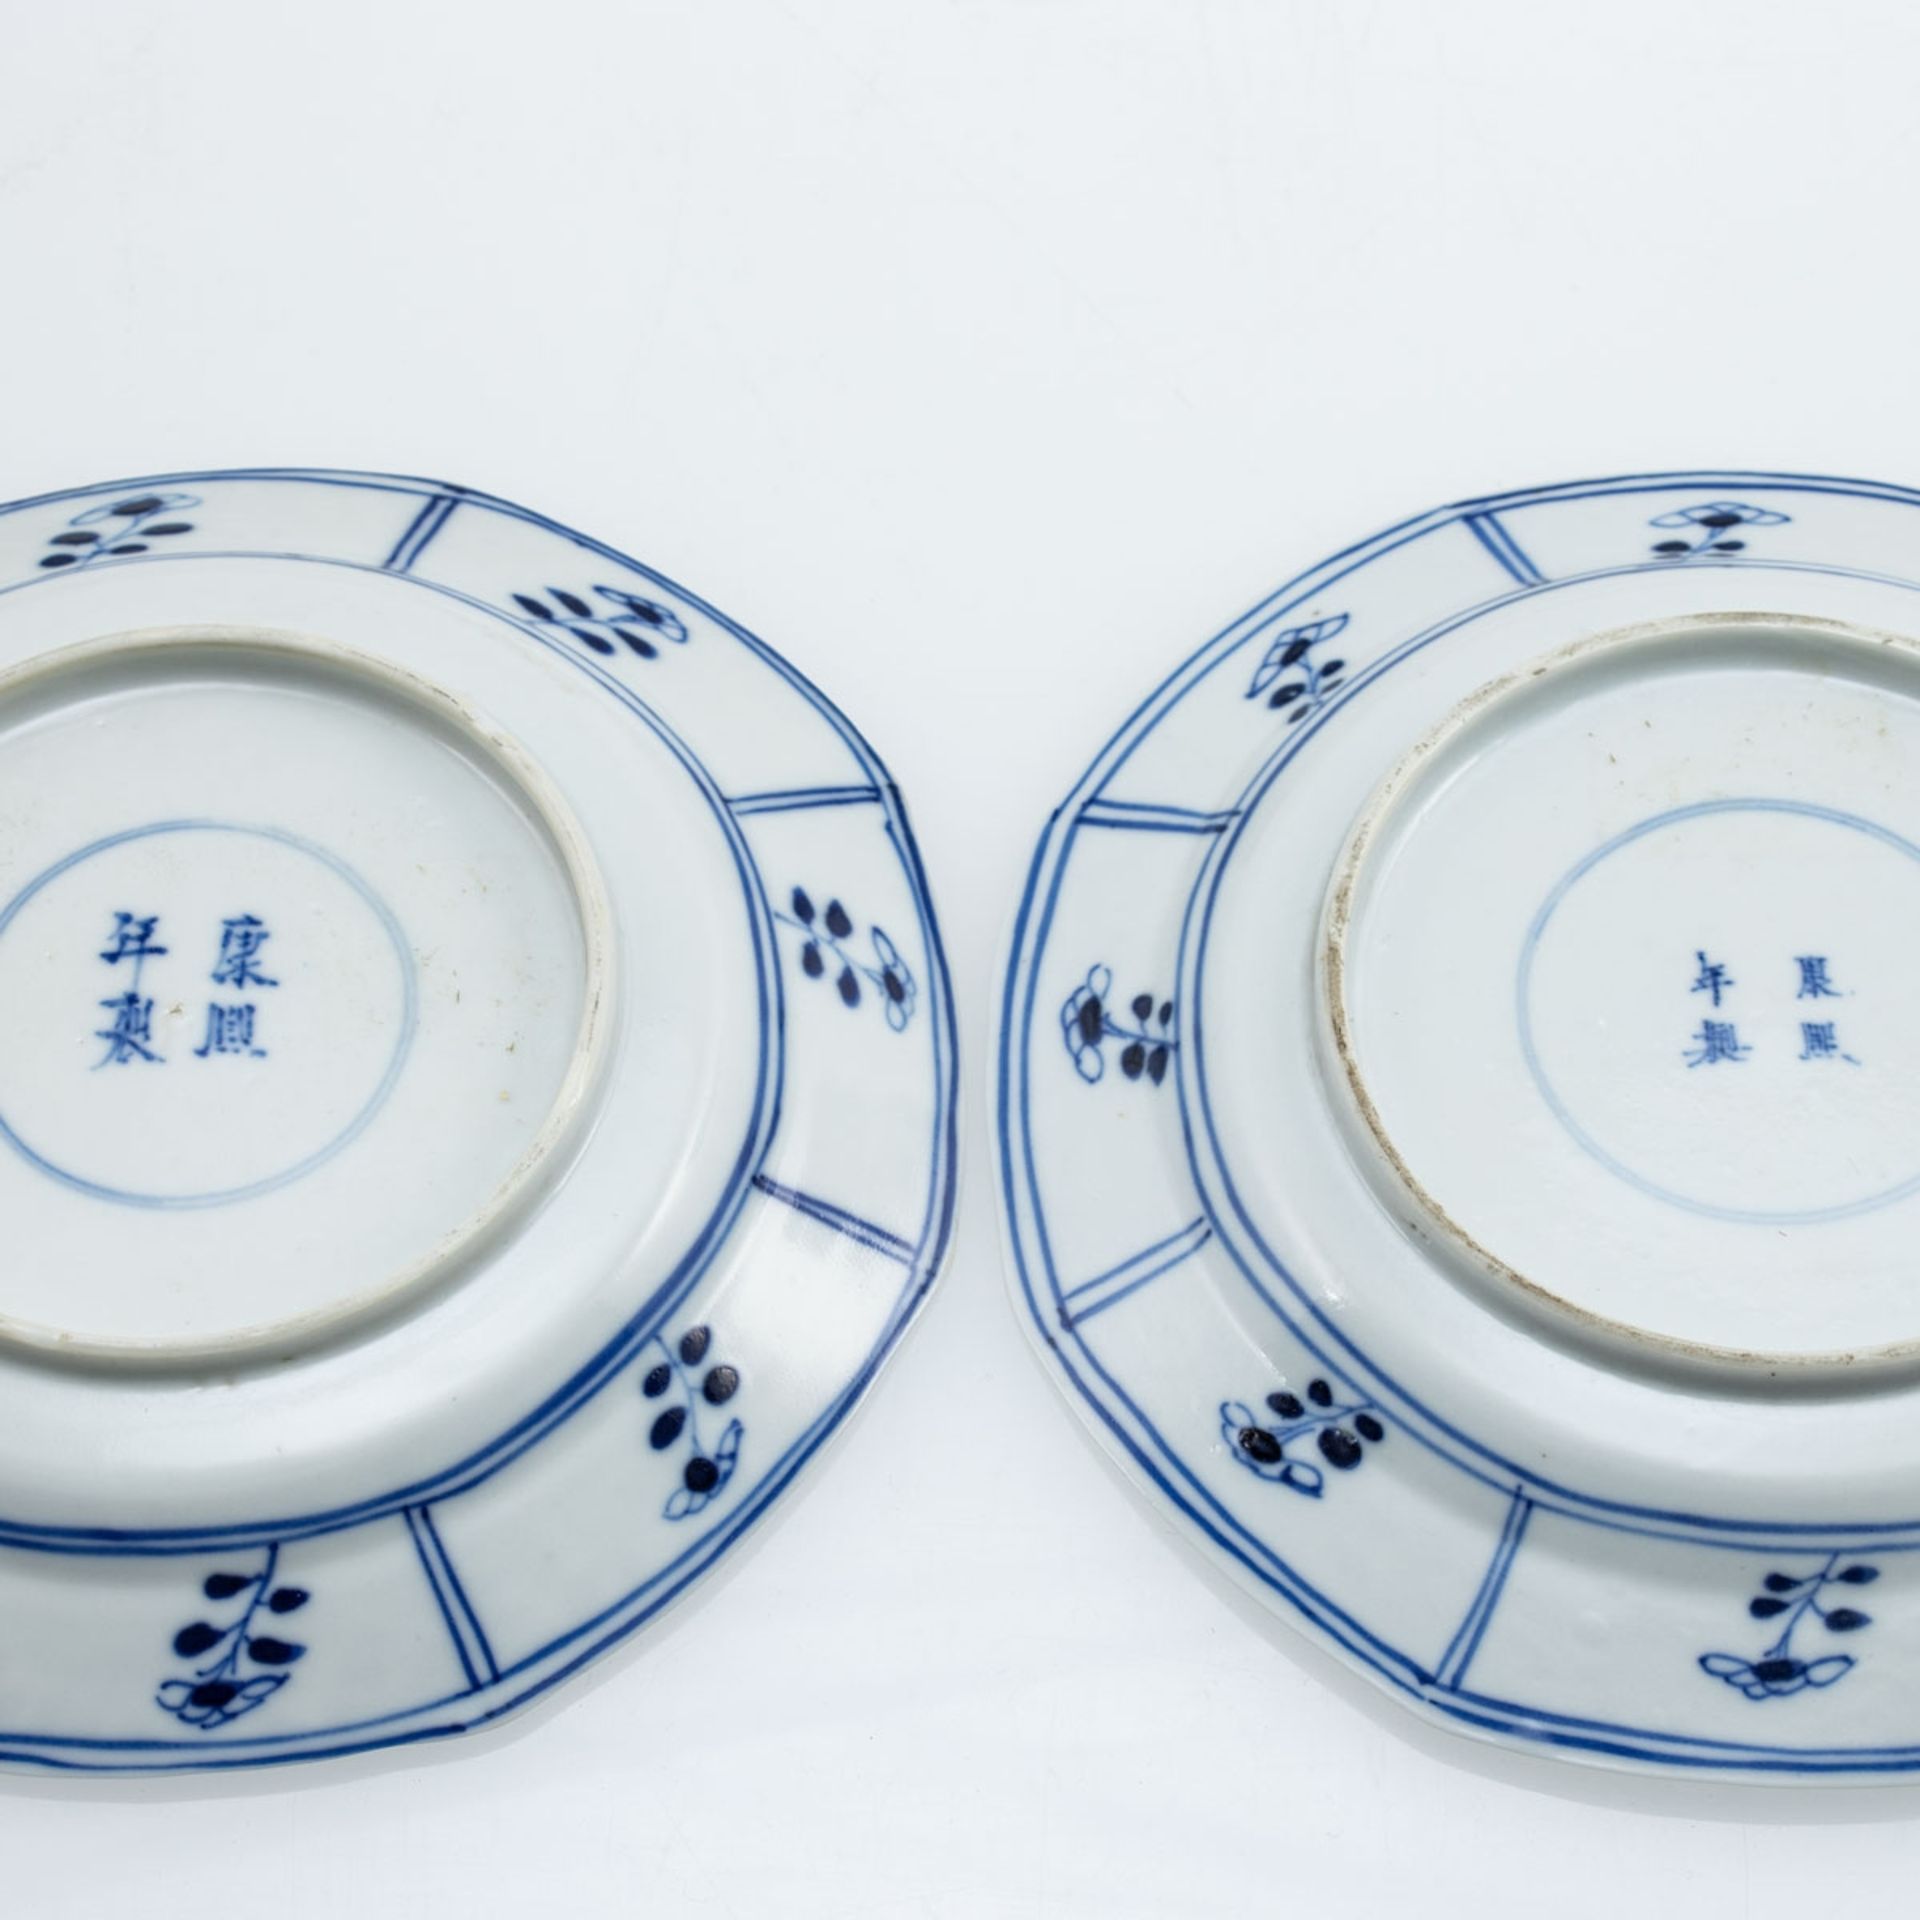 Vier Teller, China, um 1800 - Bild 2 aus 2